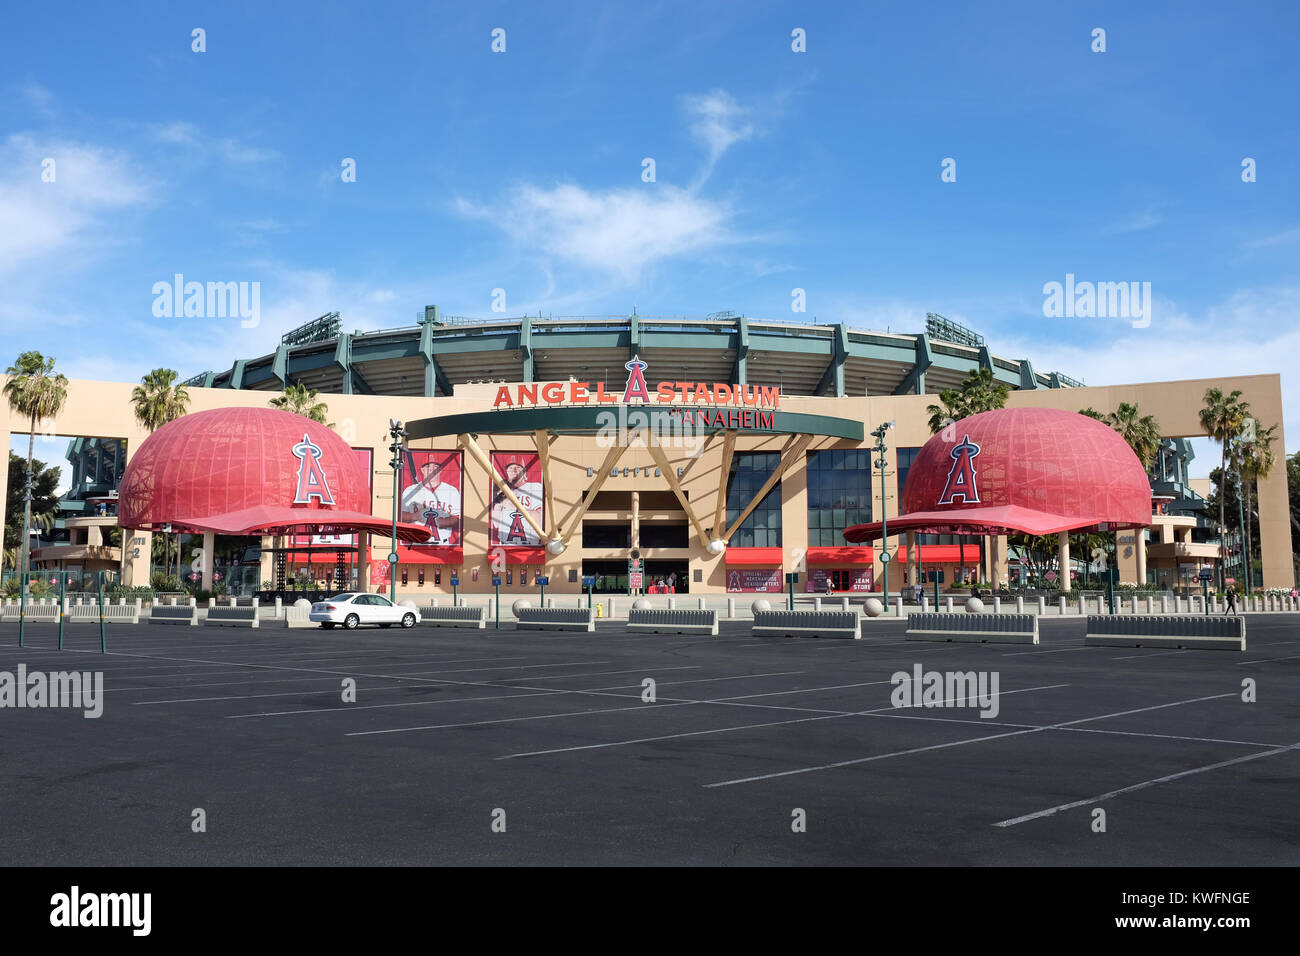 ANAHEIM, CA - 11 février 2015 : Angel Stadium d'Anaheim entrée principale. Angel Stadium d'Anaheim est la Major League Baseball (MLB) accueil Accueil Domaine o Banque D'Images